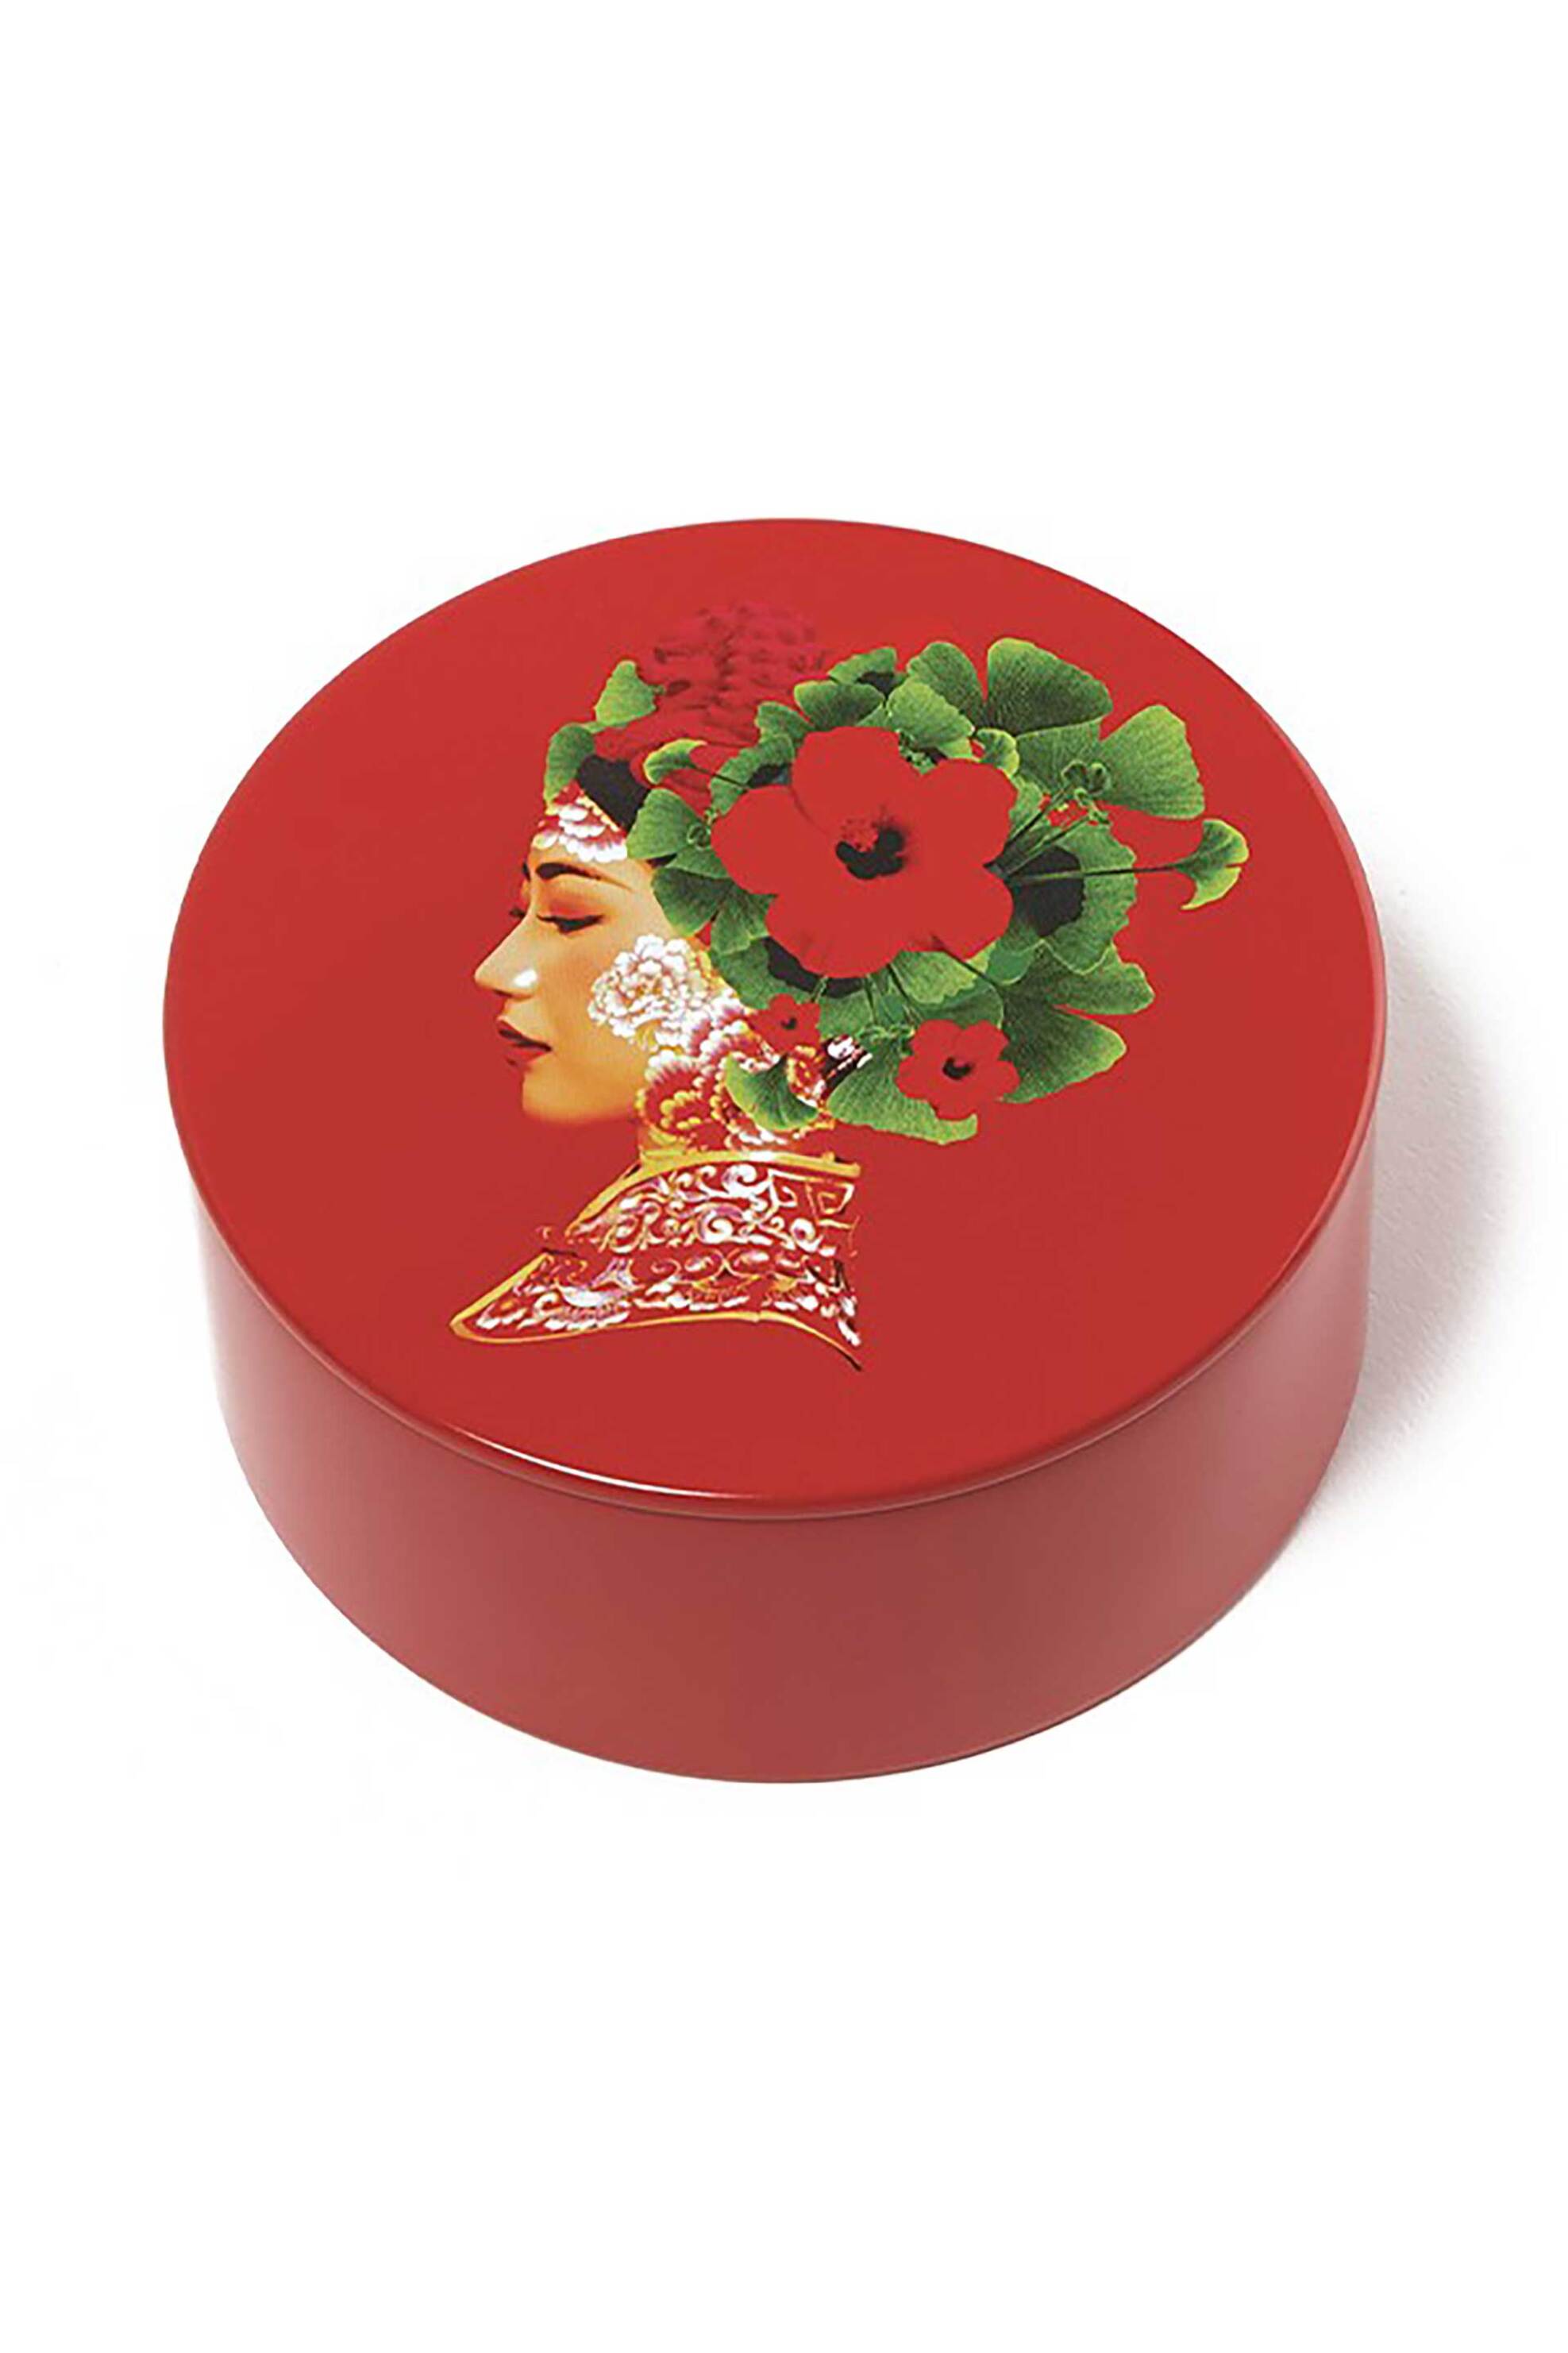 Home > ΚΟΥΖΙΝΑ > Αποθήκευση Gangzai μεταλλικό κουτί αποθήκευσης 10,4 x 6 cm "Lotus" - GD554 Κόκκινο